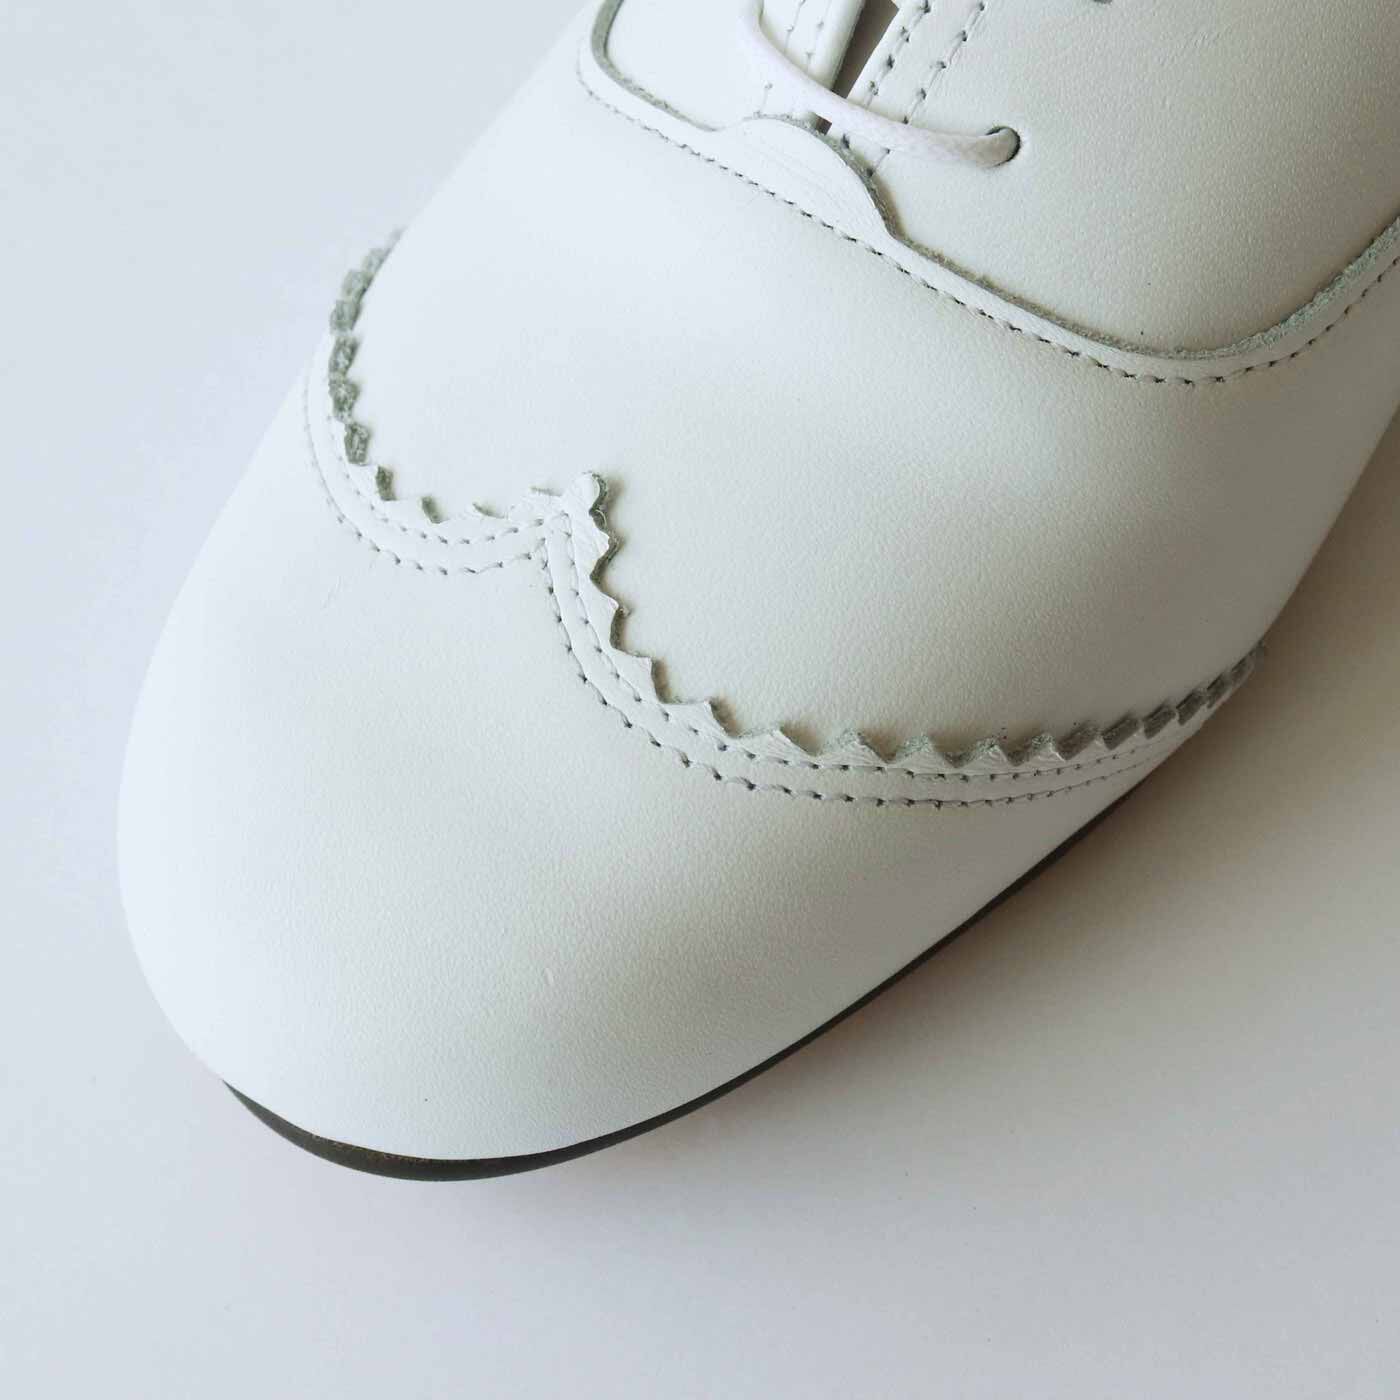 ＆Stories|長田の靴メーカーと作った 職人本革のレースアップシューズ〈ホワイト〉|幅広・甲高の足も包み込む心地よさと、足がすっきり見える長めのトゥ。